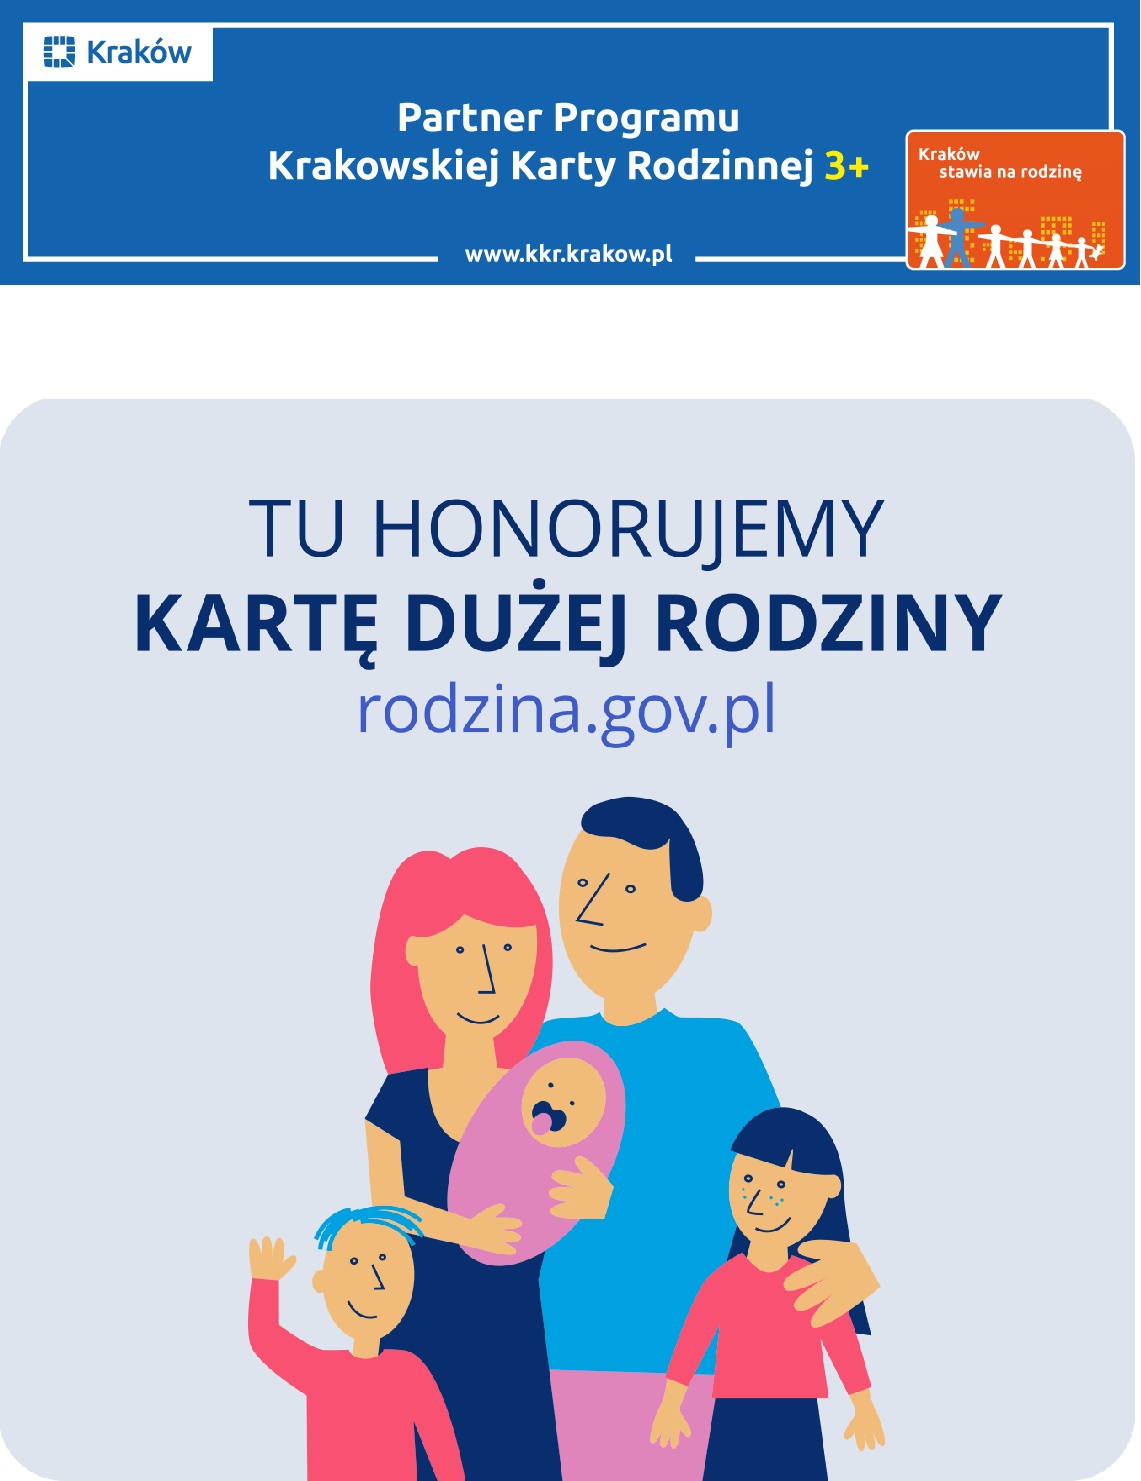 Jesteśmy partnerem programu Krakowska Karta Rodzinna 3+